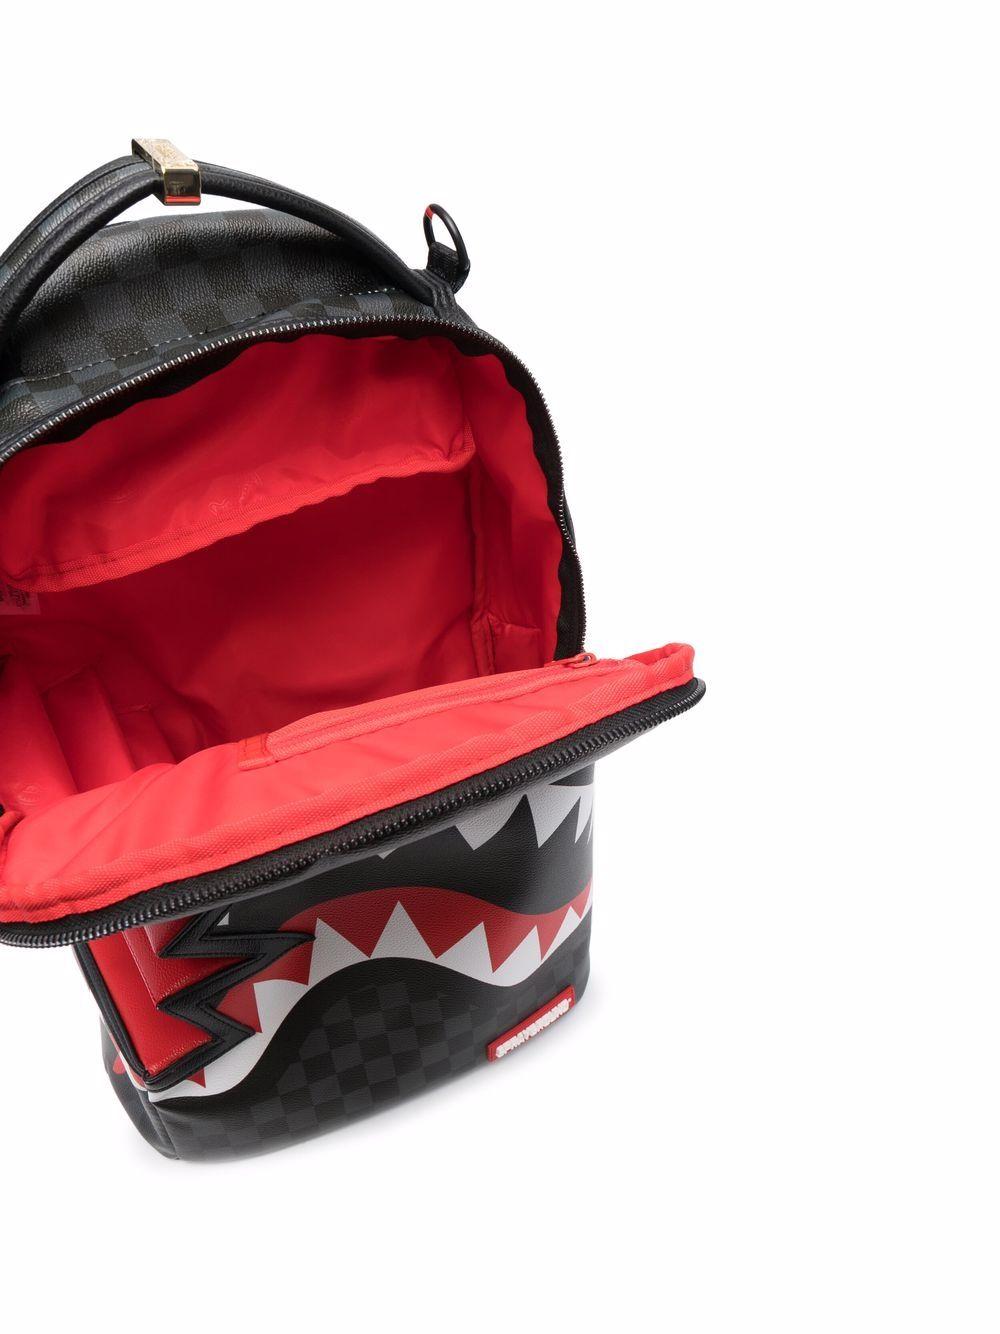 Sprayground Zaino Shark-bite Backpack in Black for Men | Lyst